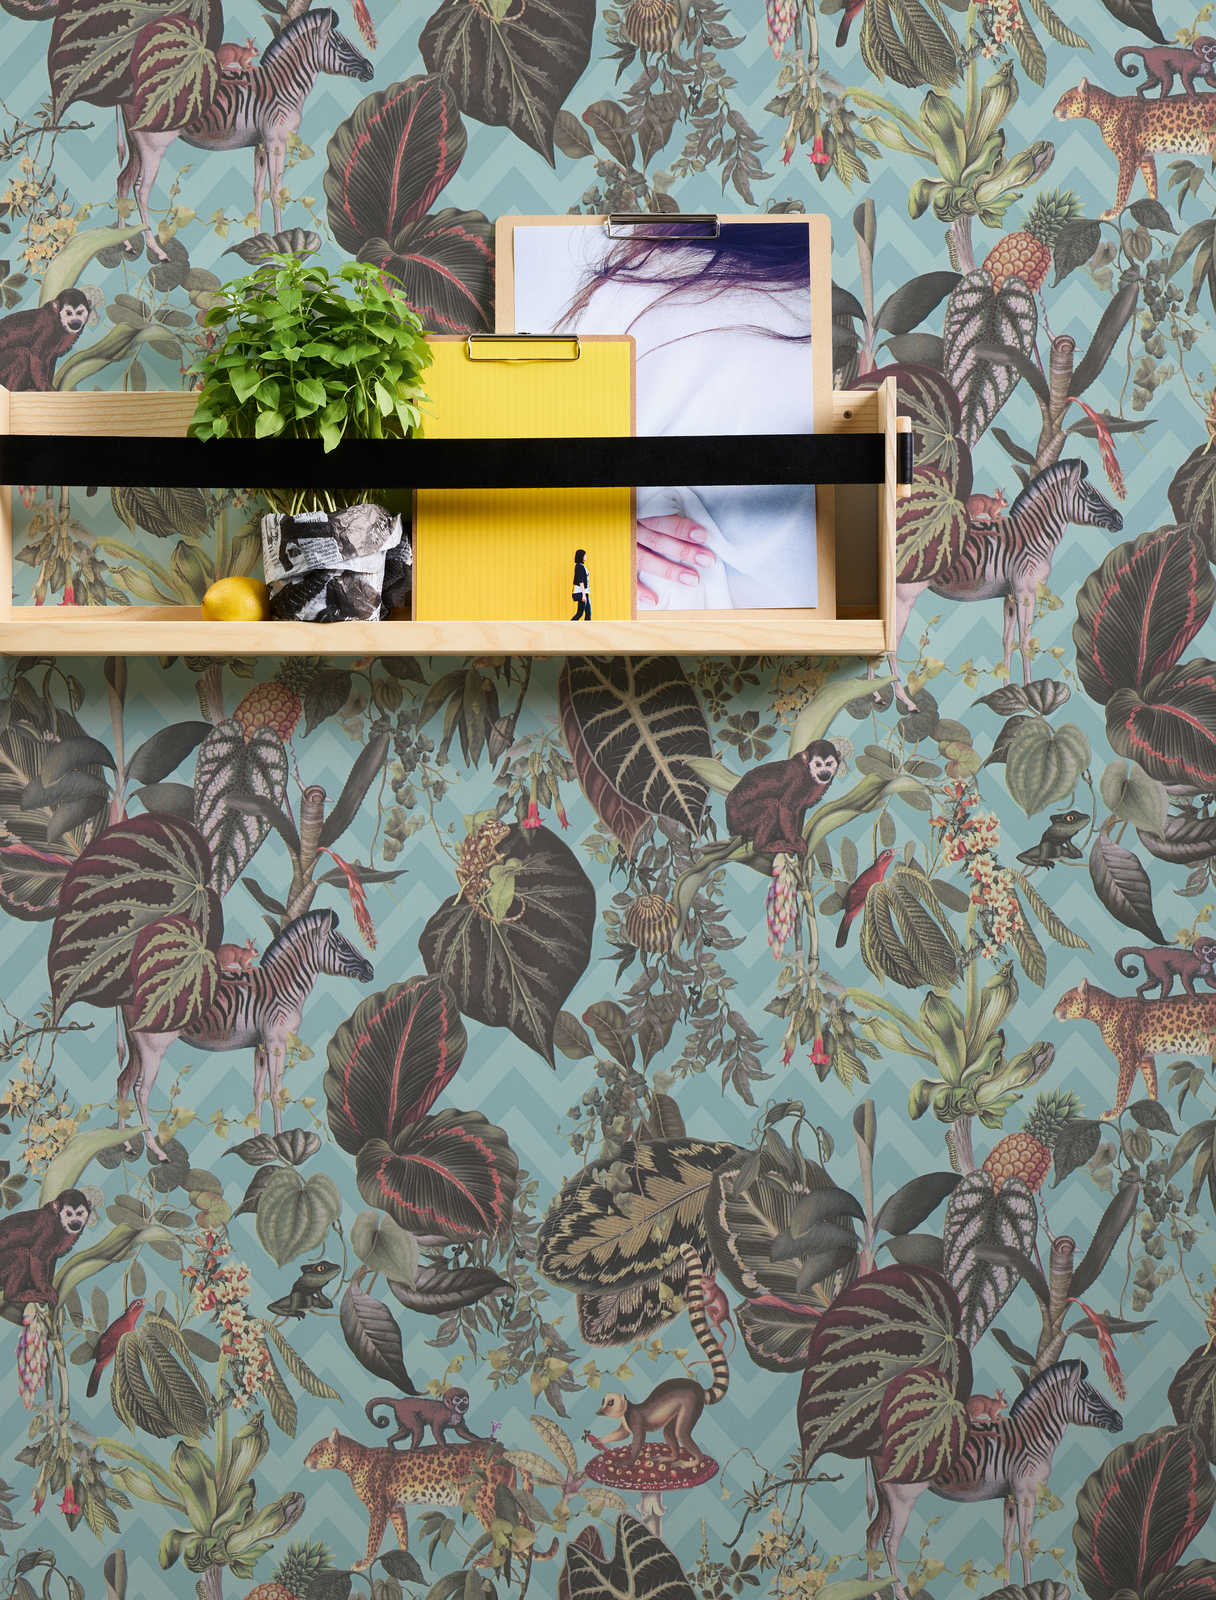             Designer behang MICHALSKY jungle bladeren & dieren - blauw, veelkleurig, groen
        